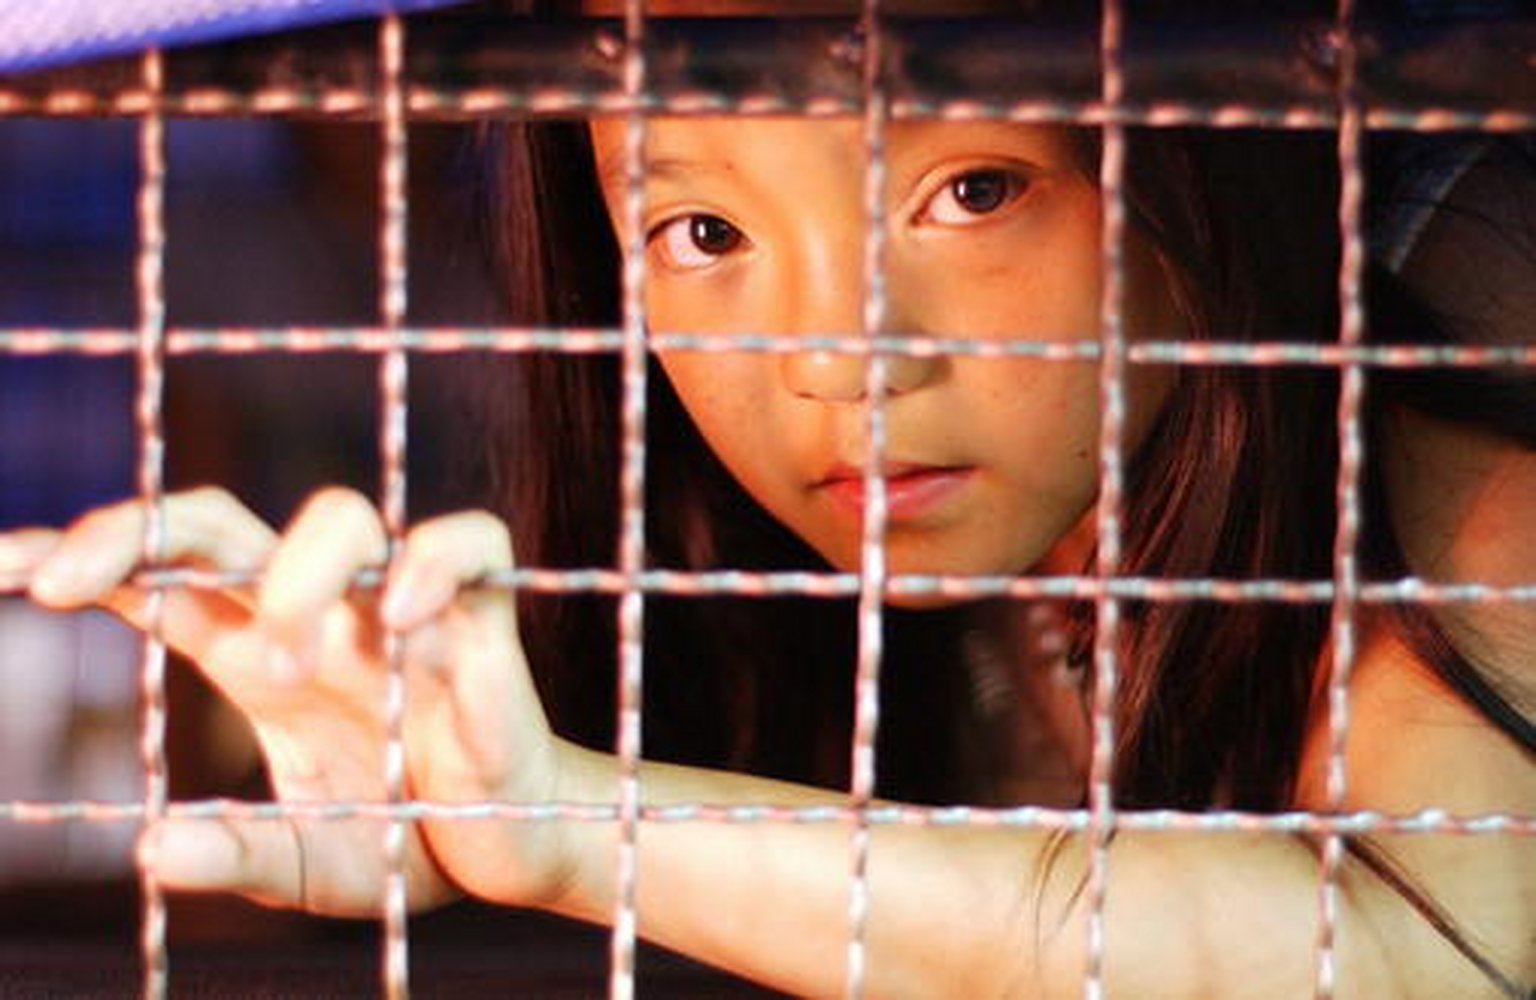 Молодые девушки попали в рабство. Живой товар 2005 Human trafficking.